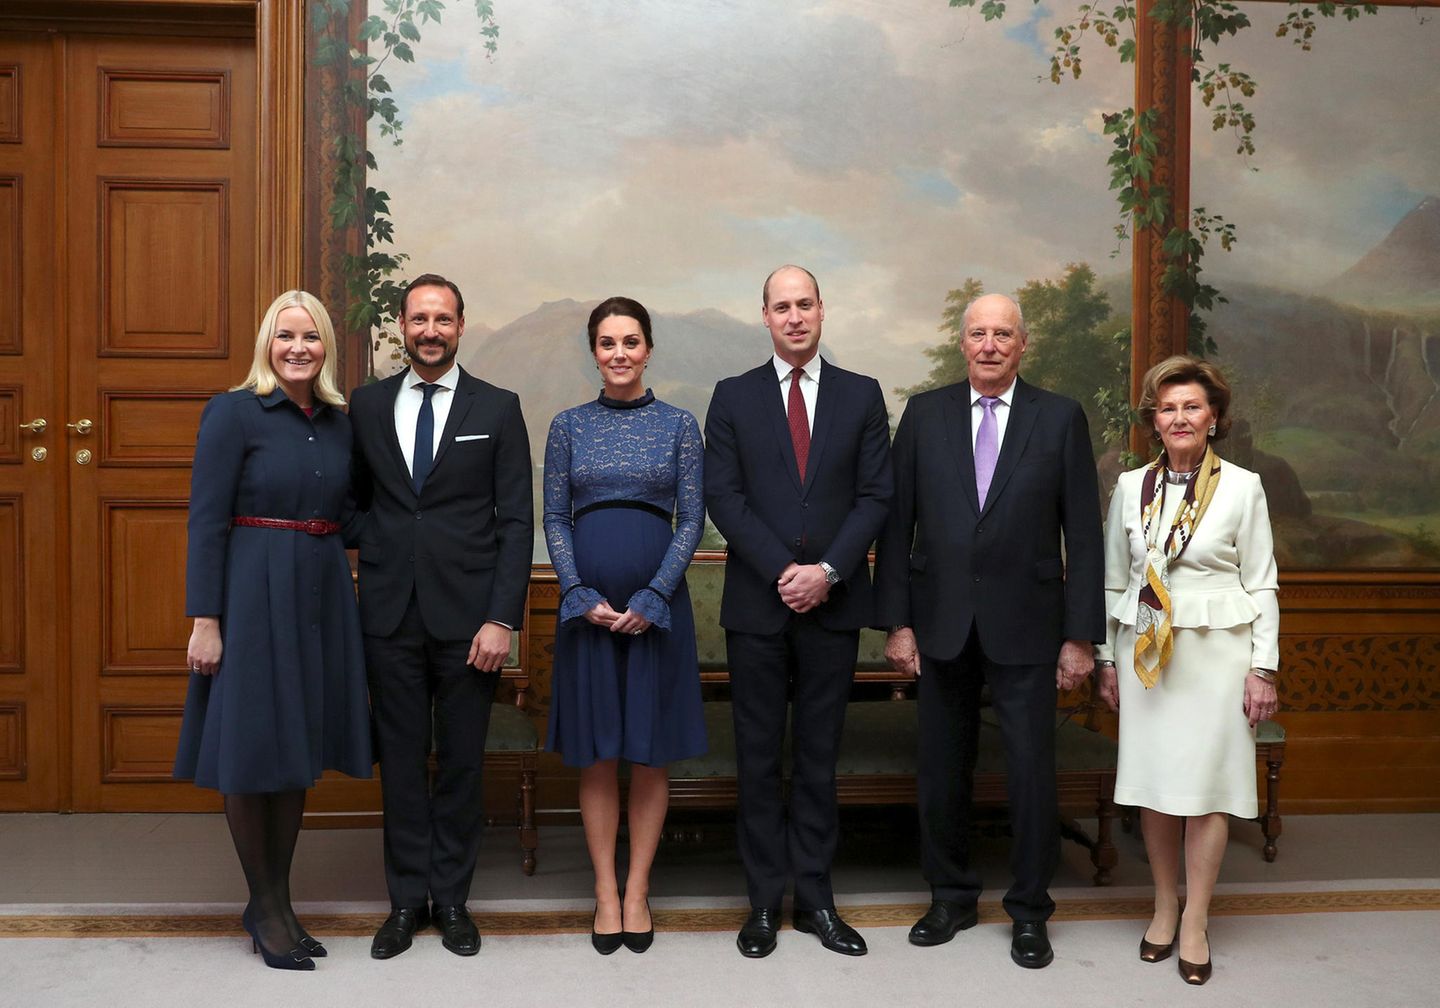 Norwegen - Tag 2   Begrüßung im Königspalast: Prinz William und Herzogin Catherine flankiert von Norwegens Kronprinzenpaar Mette-Marit und Haakon (li.) und dem Königspaar Harald und Sonja (r.). 